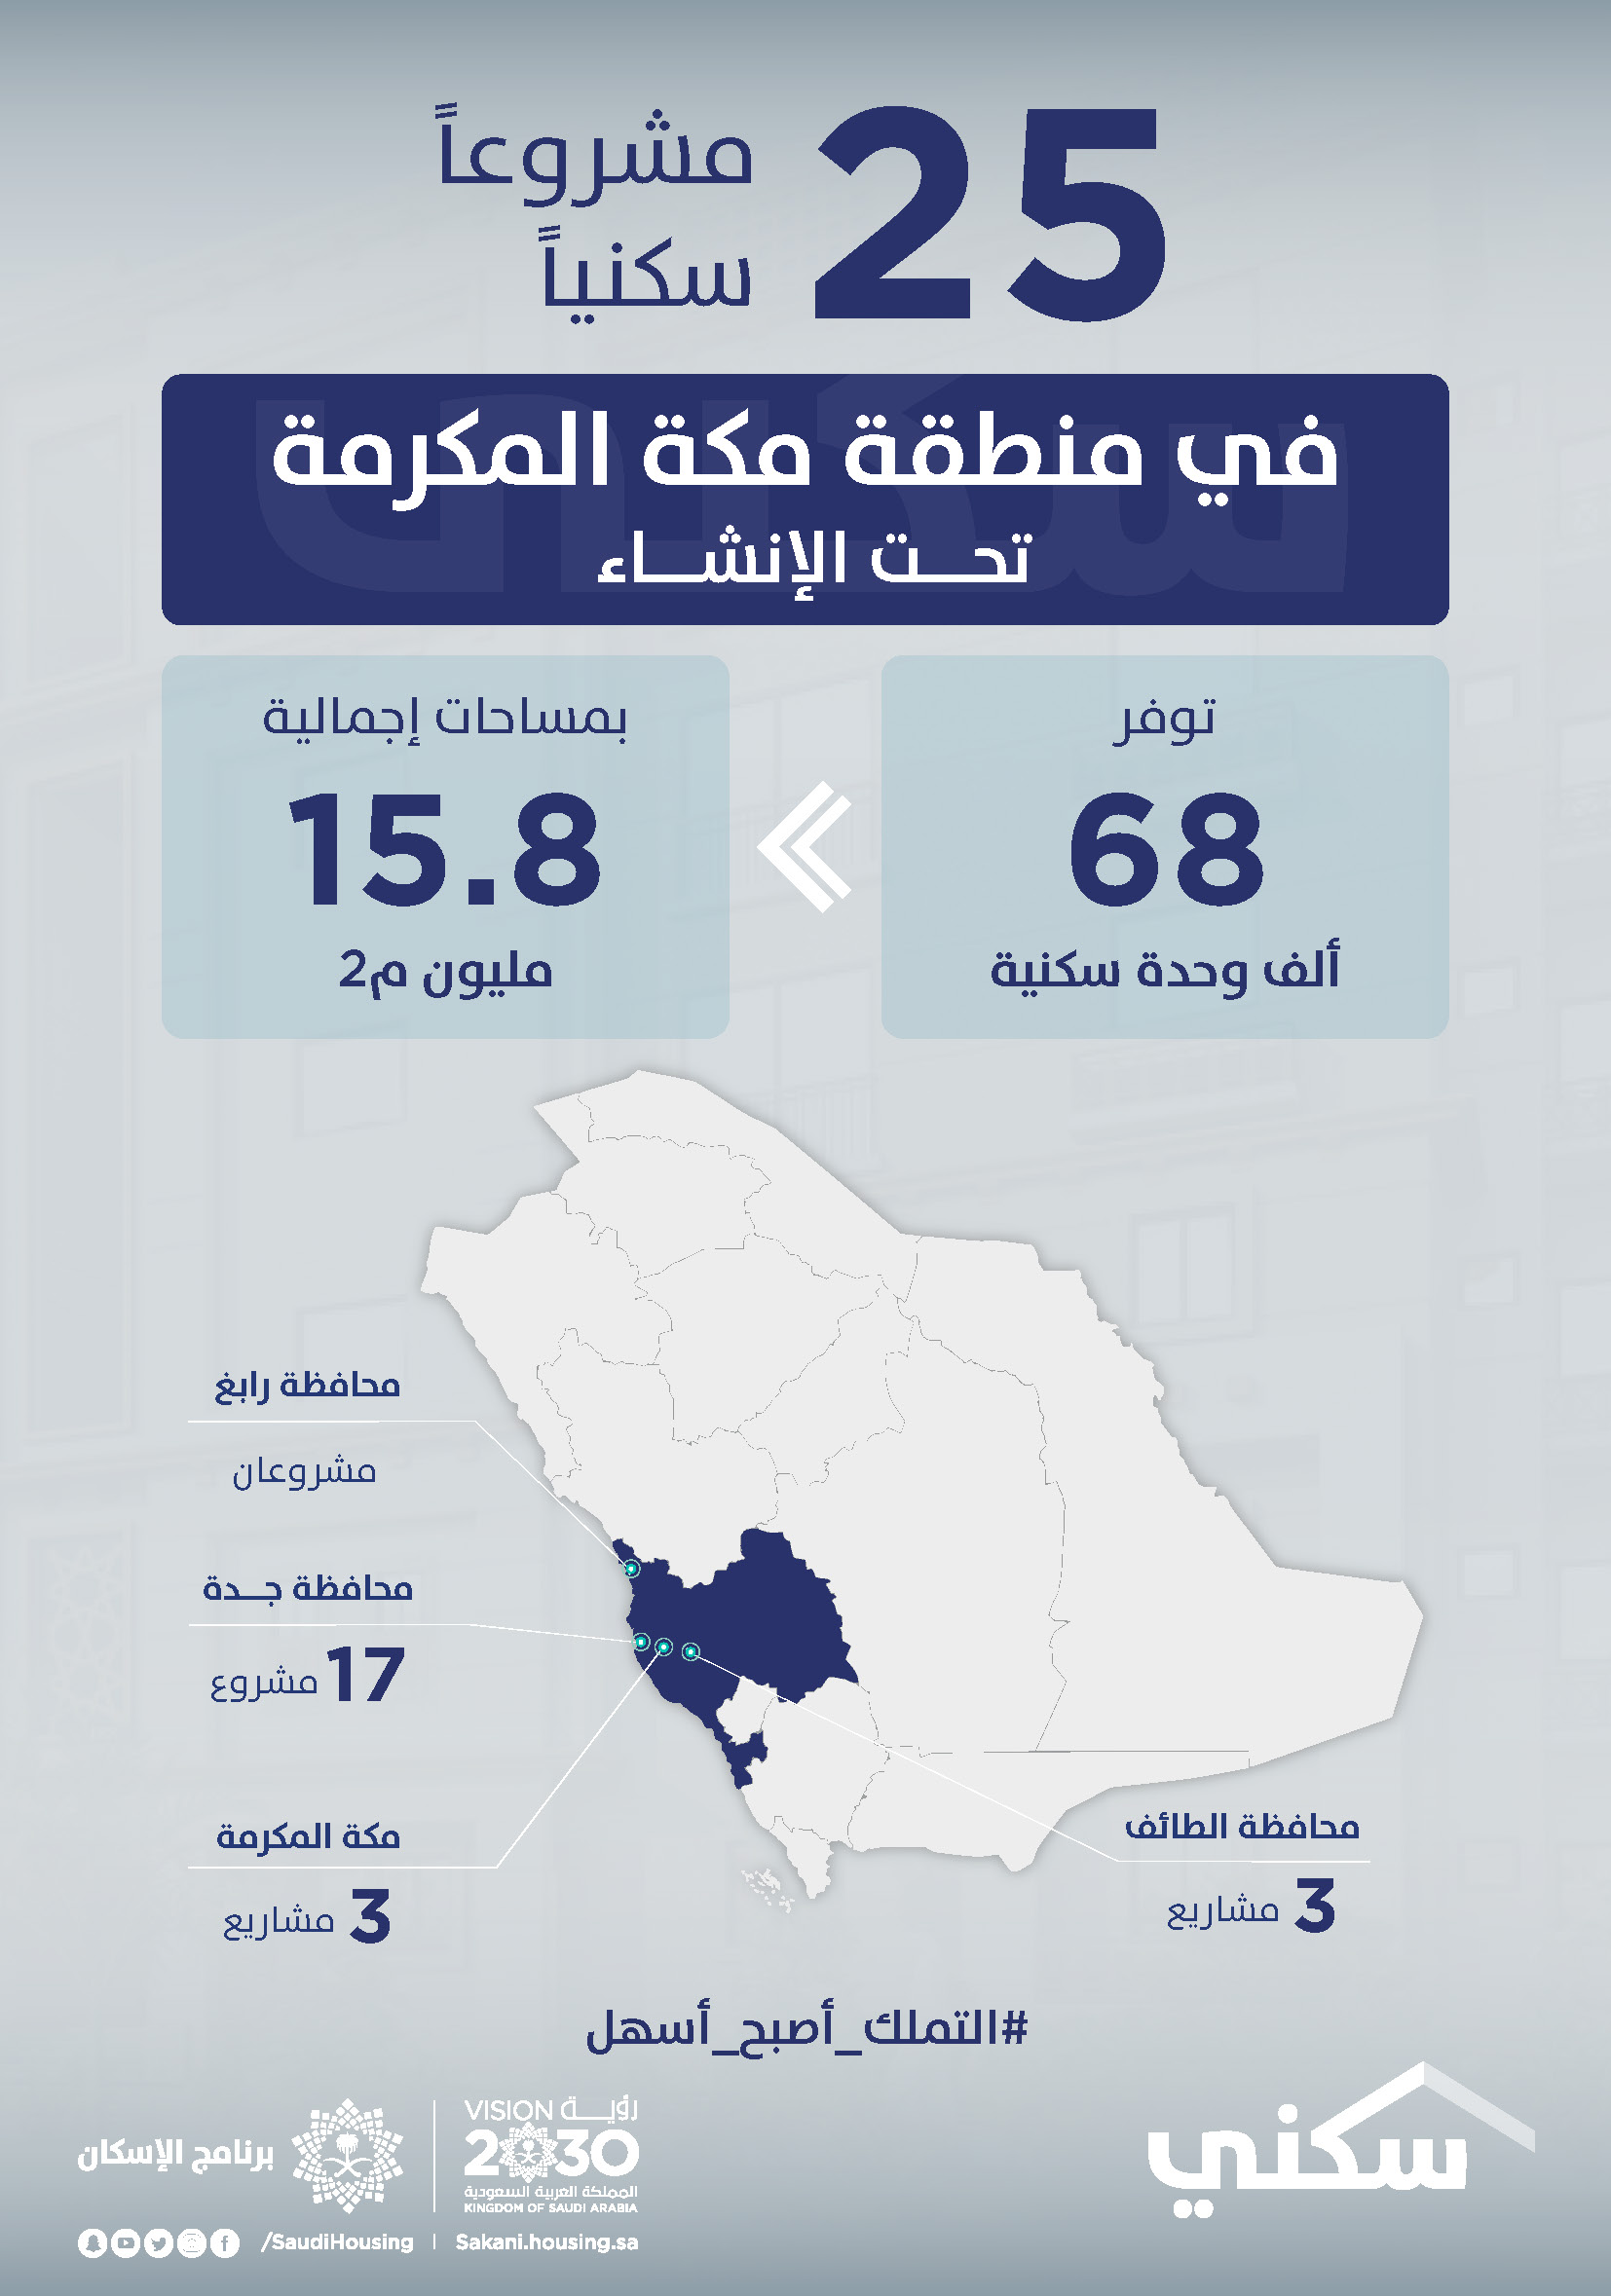 "سكني" يوفّر 68 ألف وحدة تحت الإنشاء ضمن 25 مشروعاً في منطقة مكة المكرمة